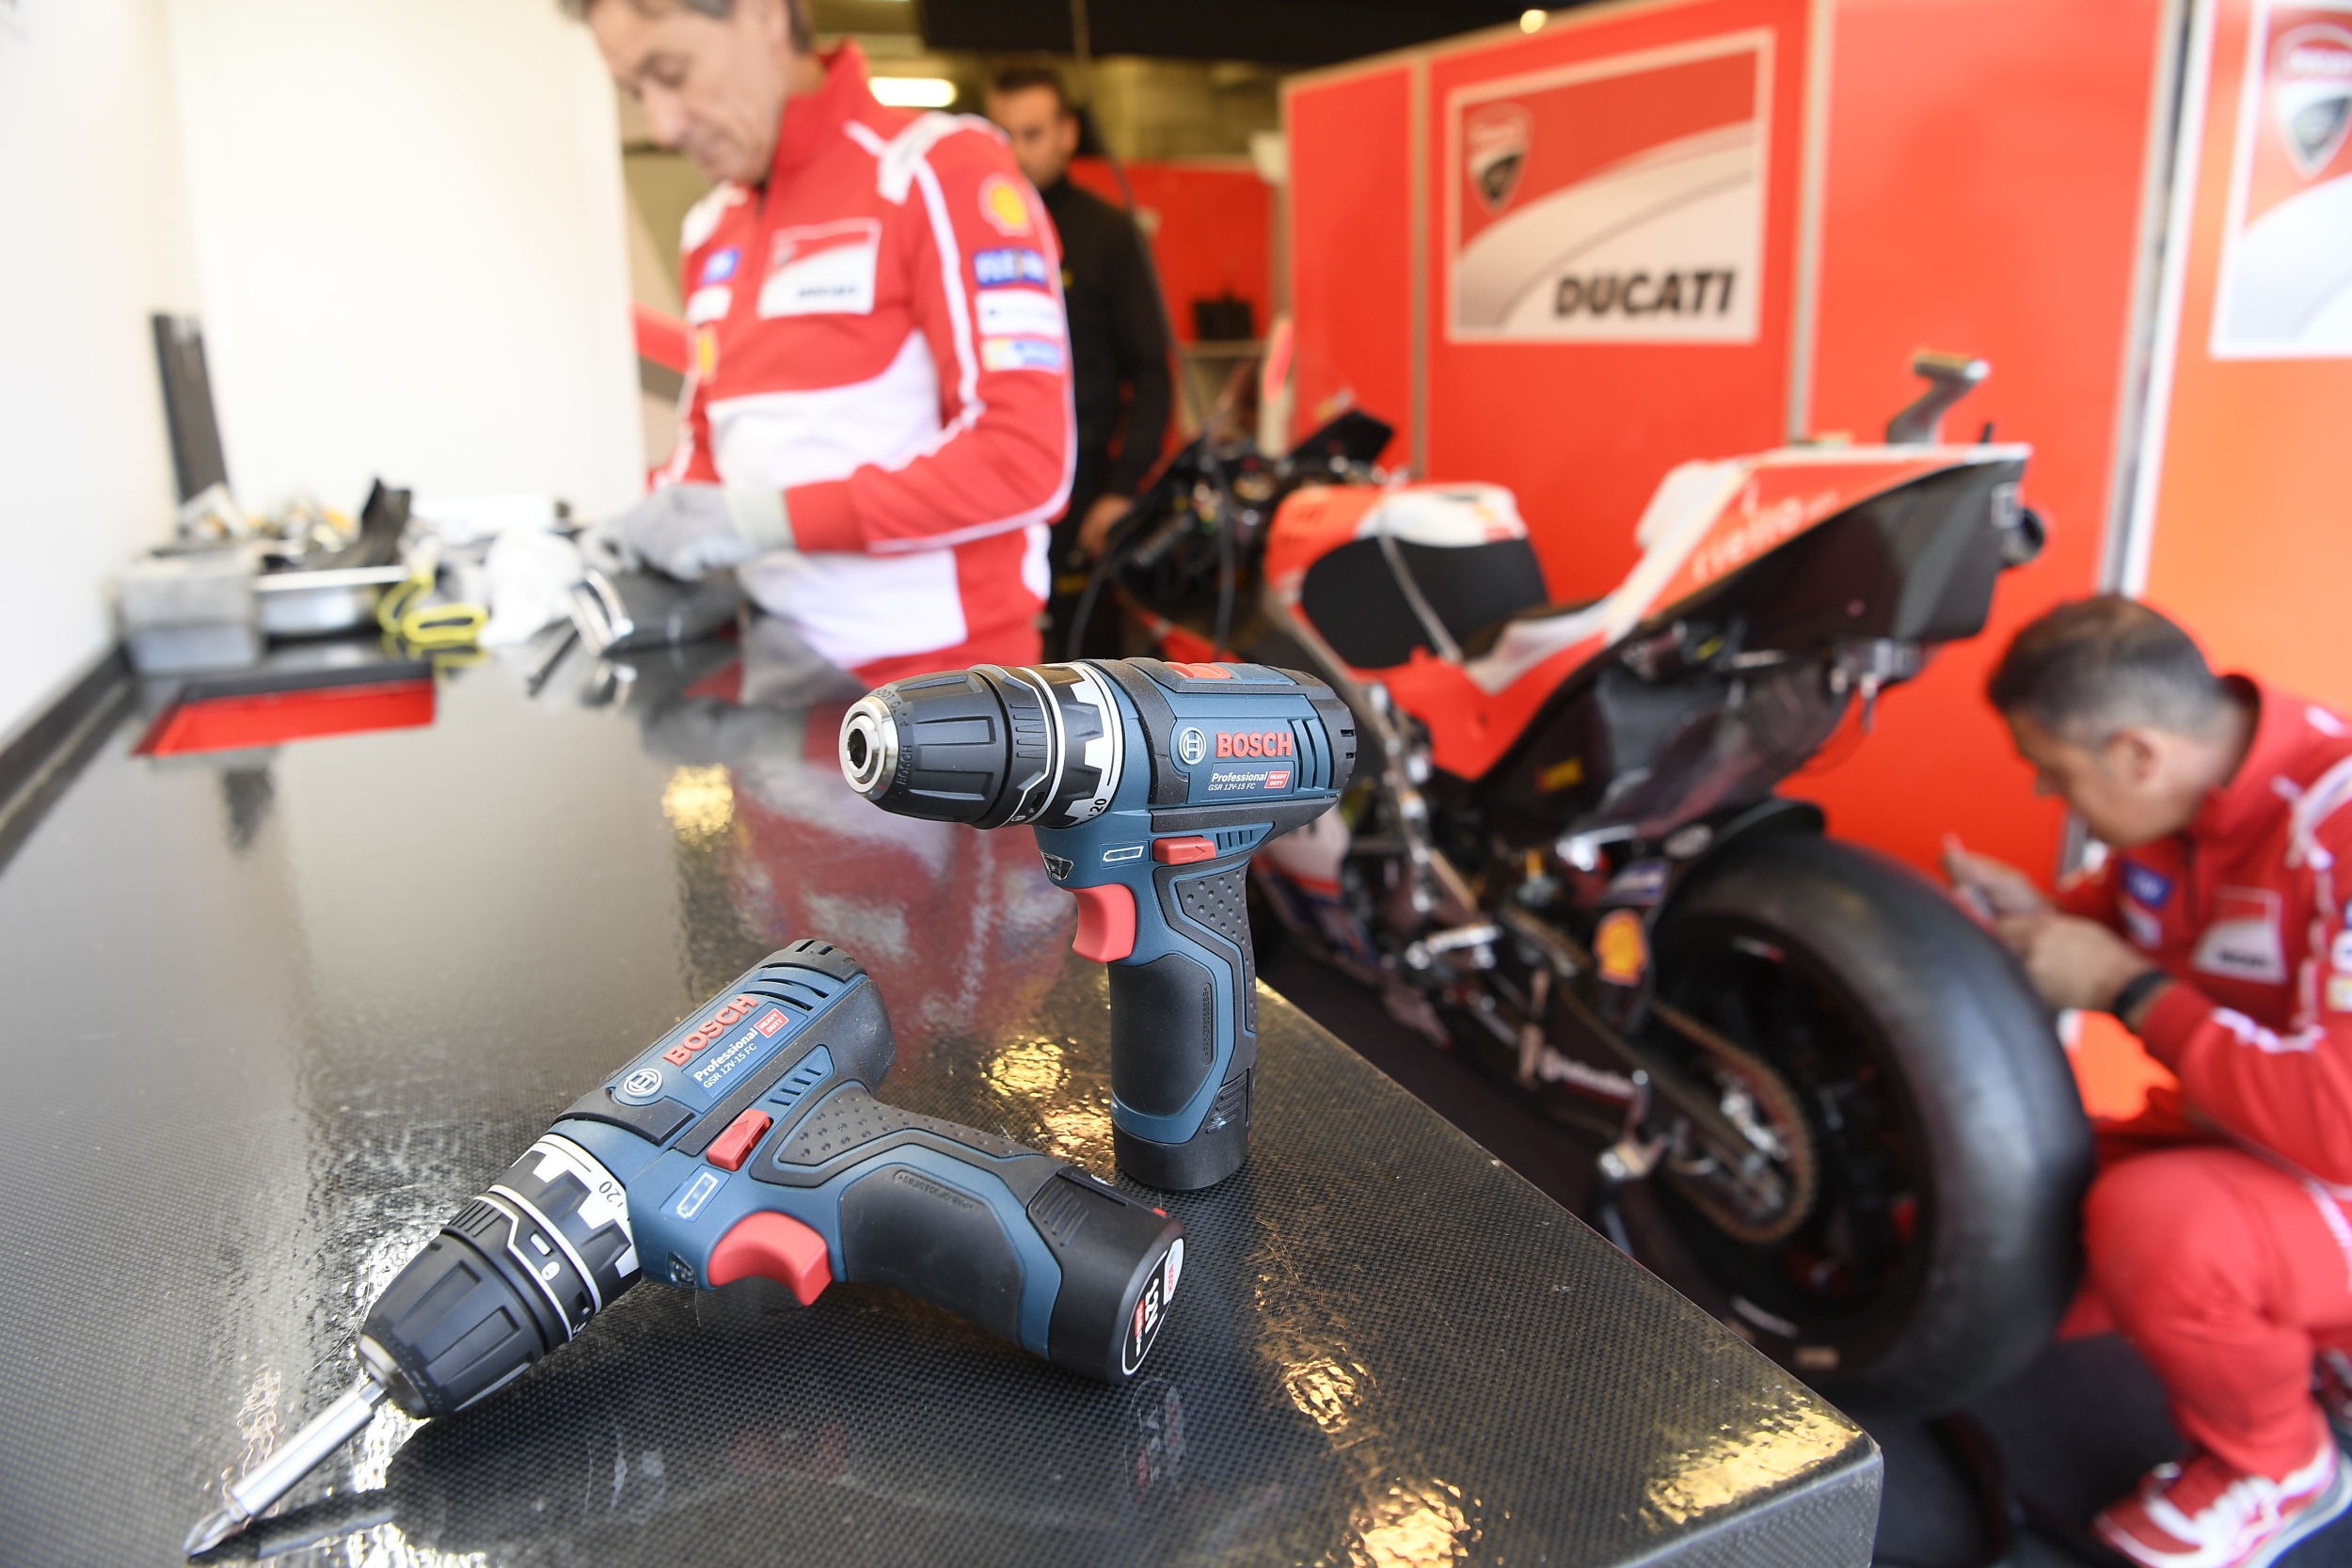 10 anni di partnership: I Team Ducati MotoGP e Aruba.it Racing - Ducati si affidano agli elettroutensili Bosch Professional